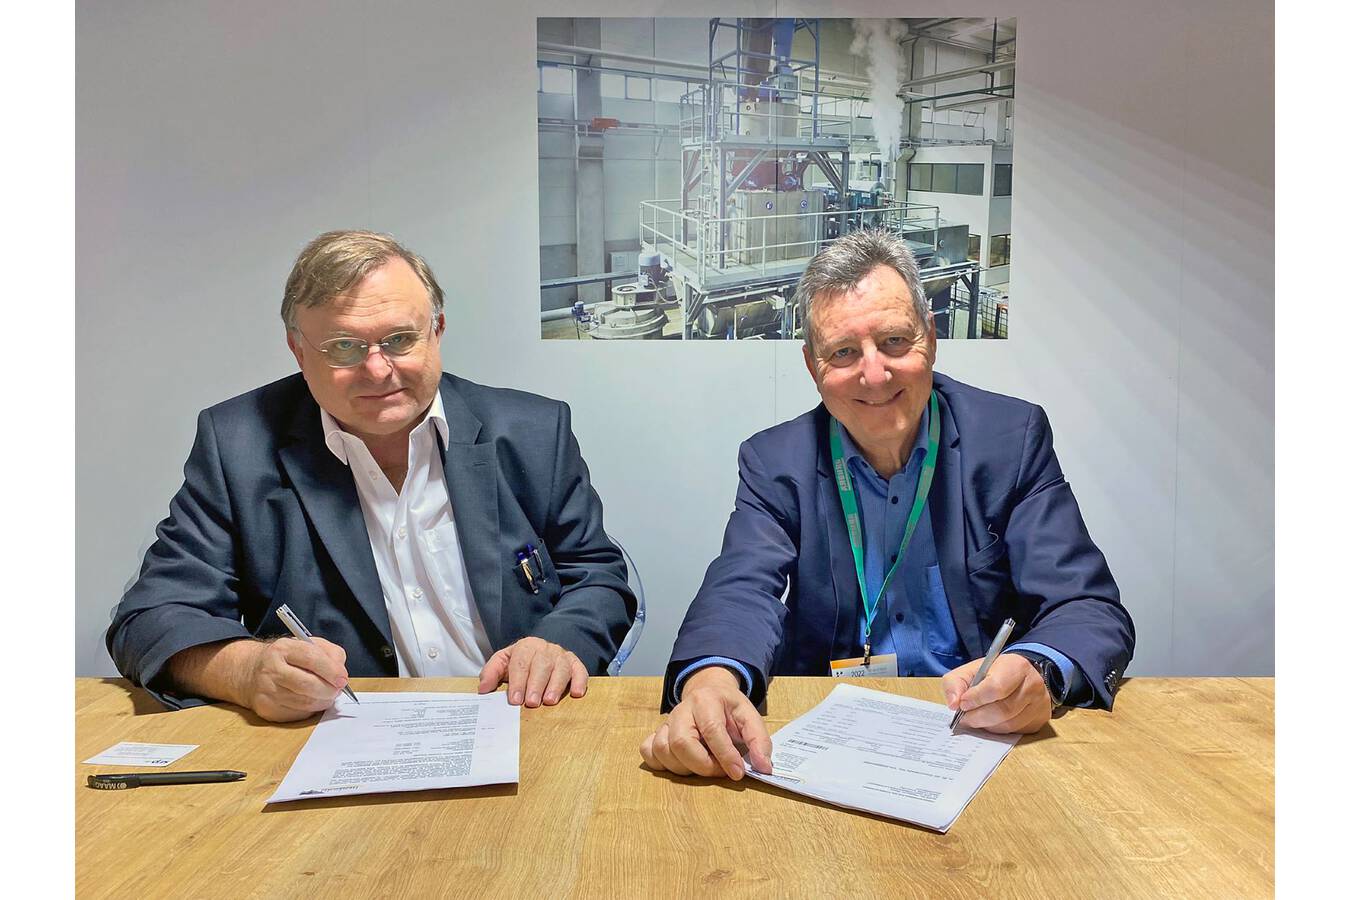 Olivier Vilcot (rechts), General Manager der Plastics Recycling Division von SUEZ, und Werner Herbold, Geschäftsführer des gleichnamigen Unternehmens, bei der Vertragsunterzeichnung.